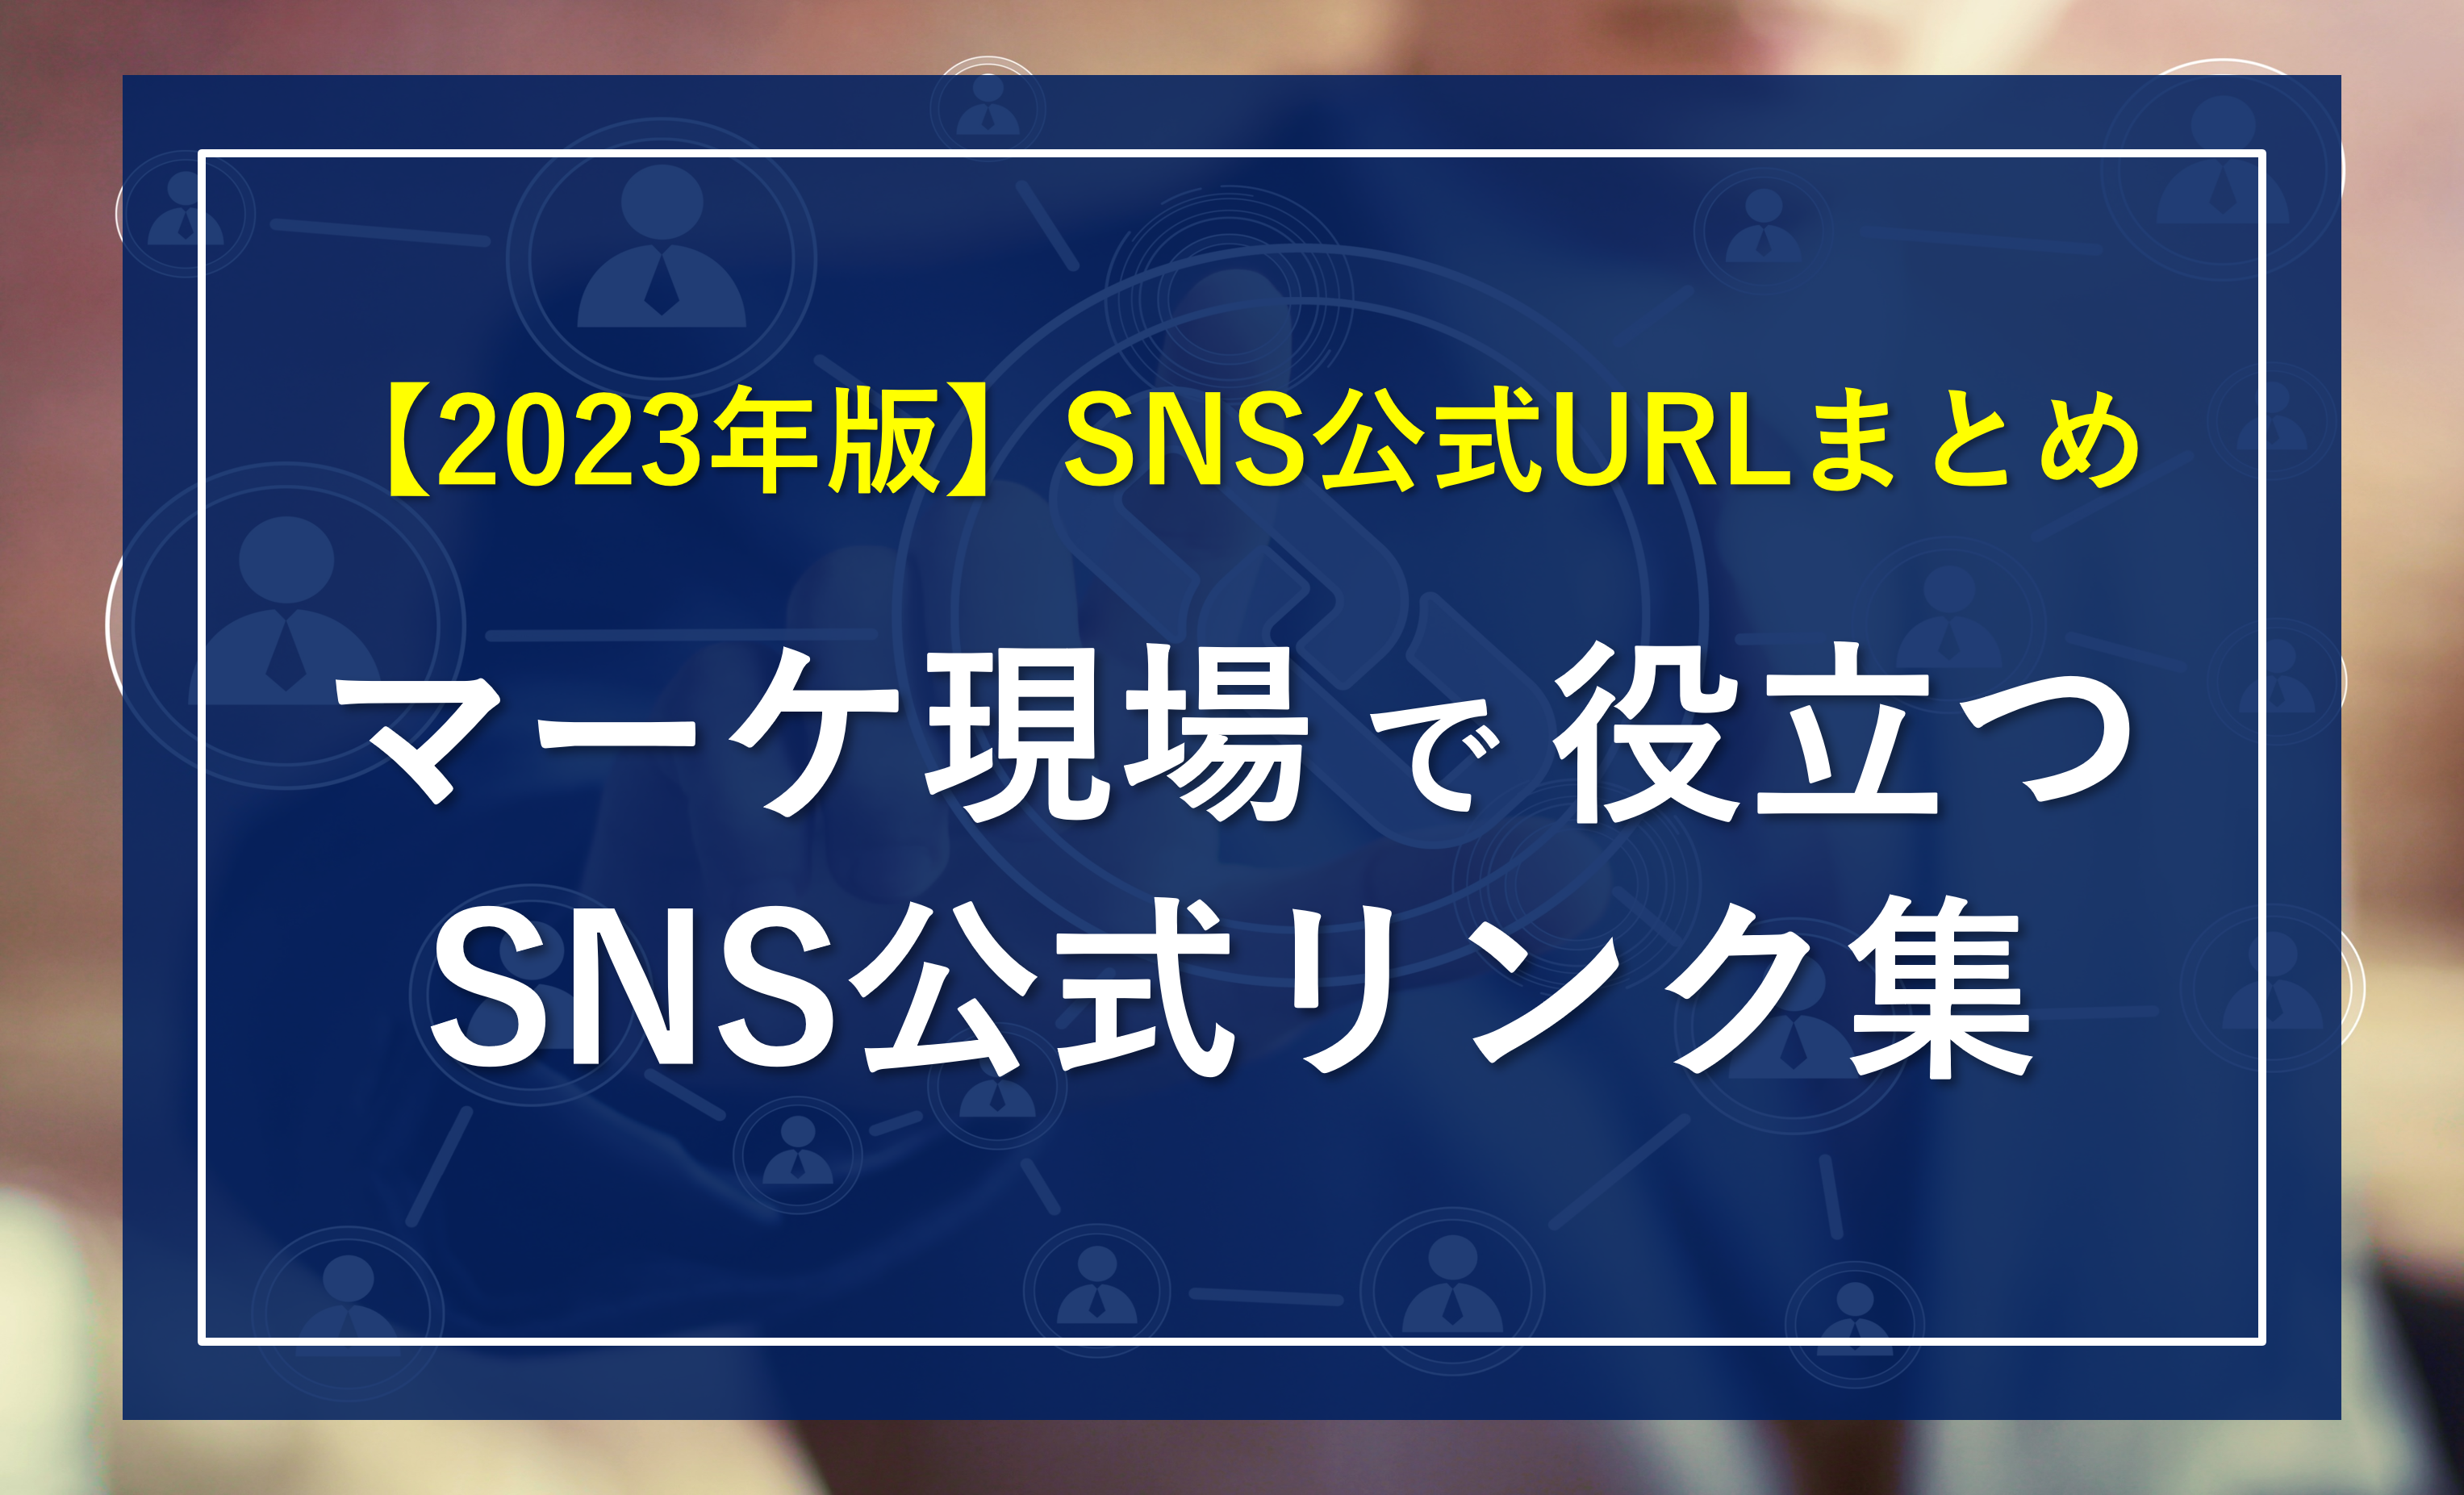 【2023年版】SNS広告・マーケティングの最新情報が分かる「公式URLまとめ」